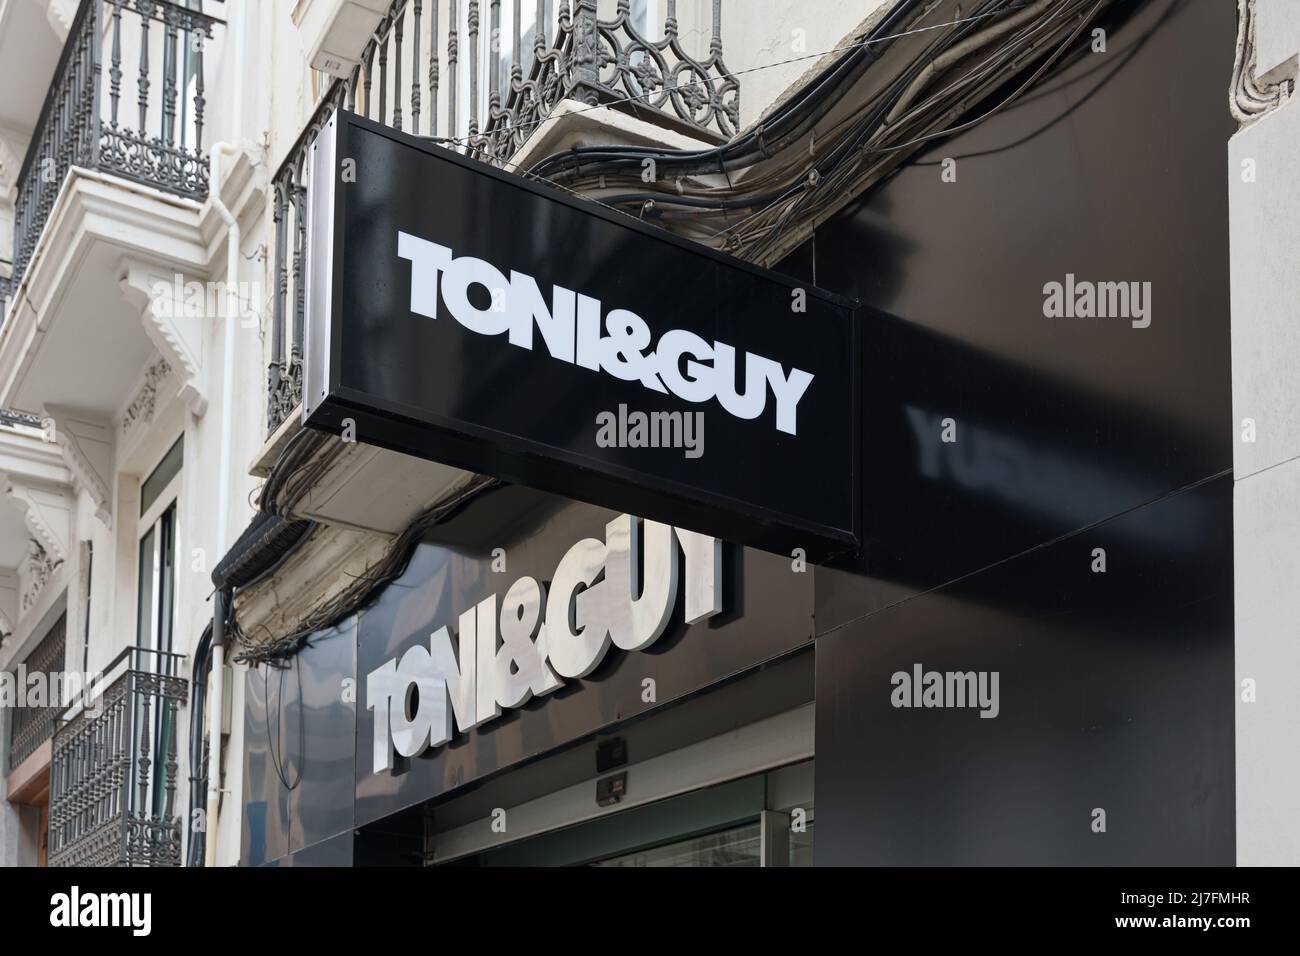 Toni and guy Banque de photographies et d'images à haute résolution - Alamy